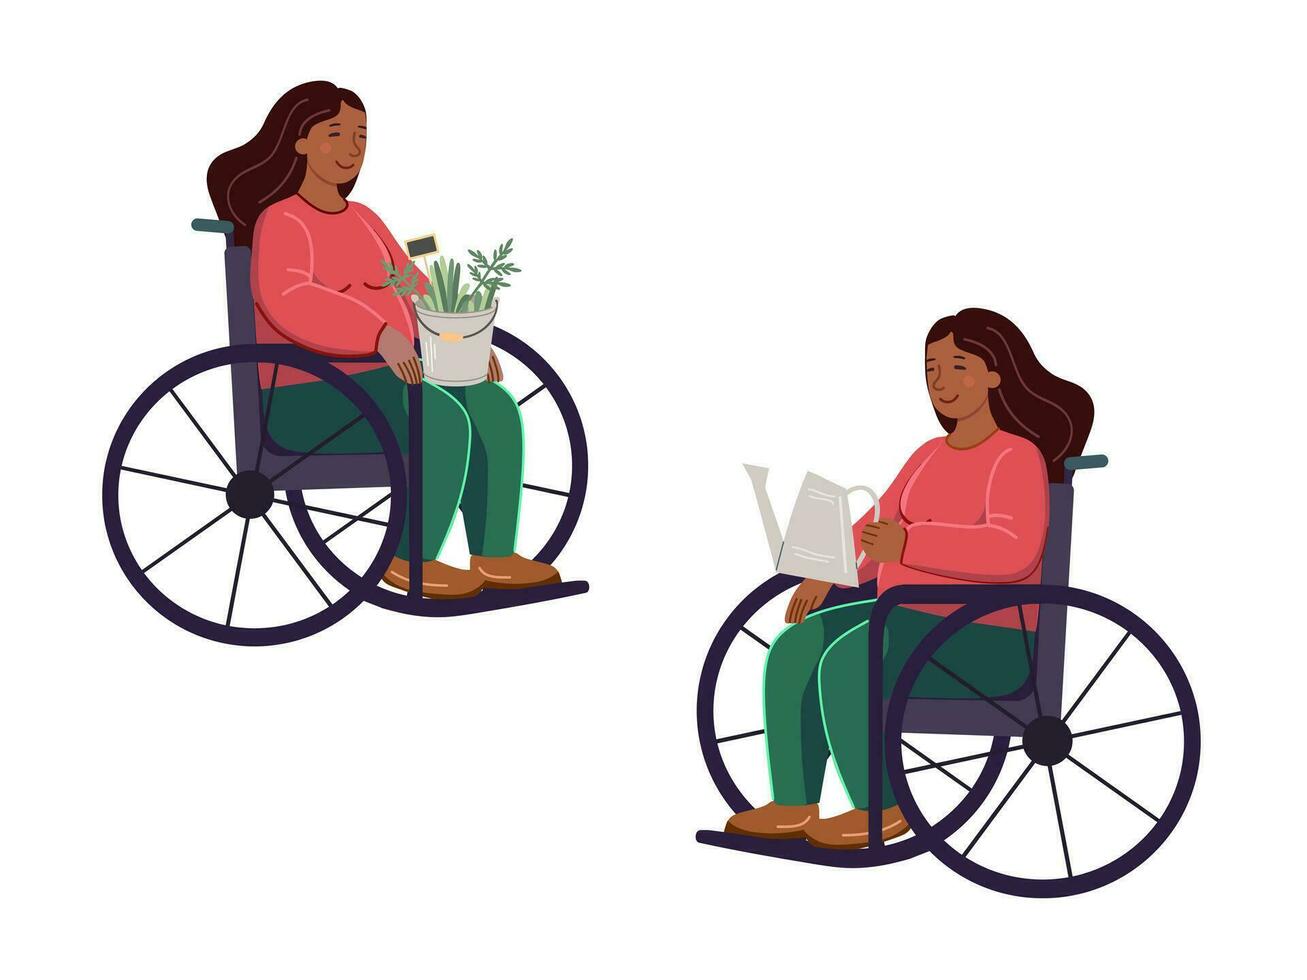 un africano americano mujer en un silla de ruedas con un riego lata en su manos y mujer con un Cubeta de plantas en su regazo. jardinería plano vector ilustración. igualdad, tolerancia, inclusión.